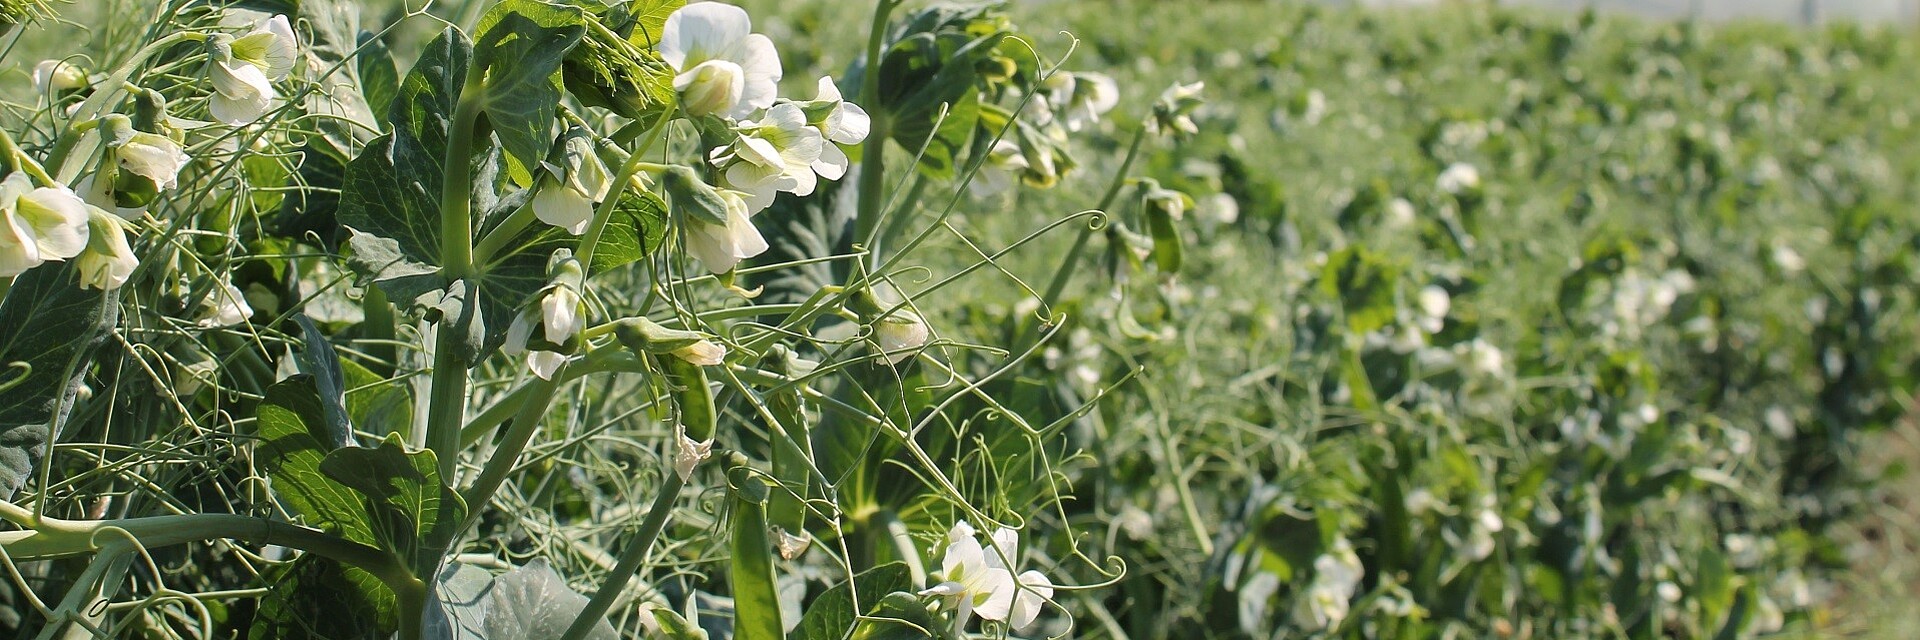 Field with flowering vining peas